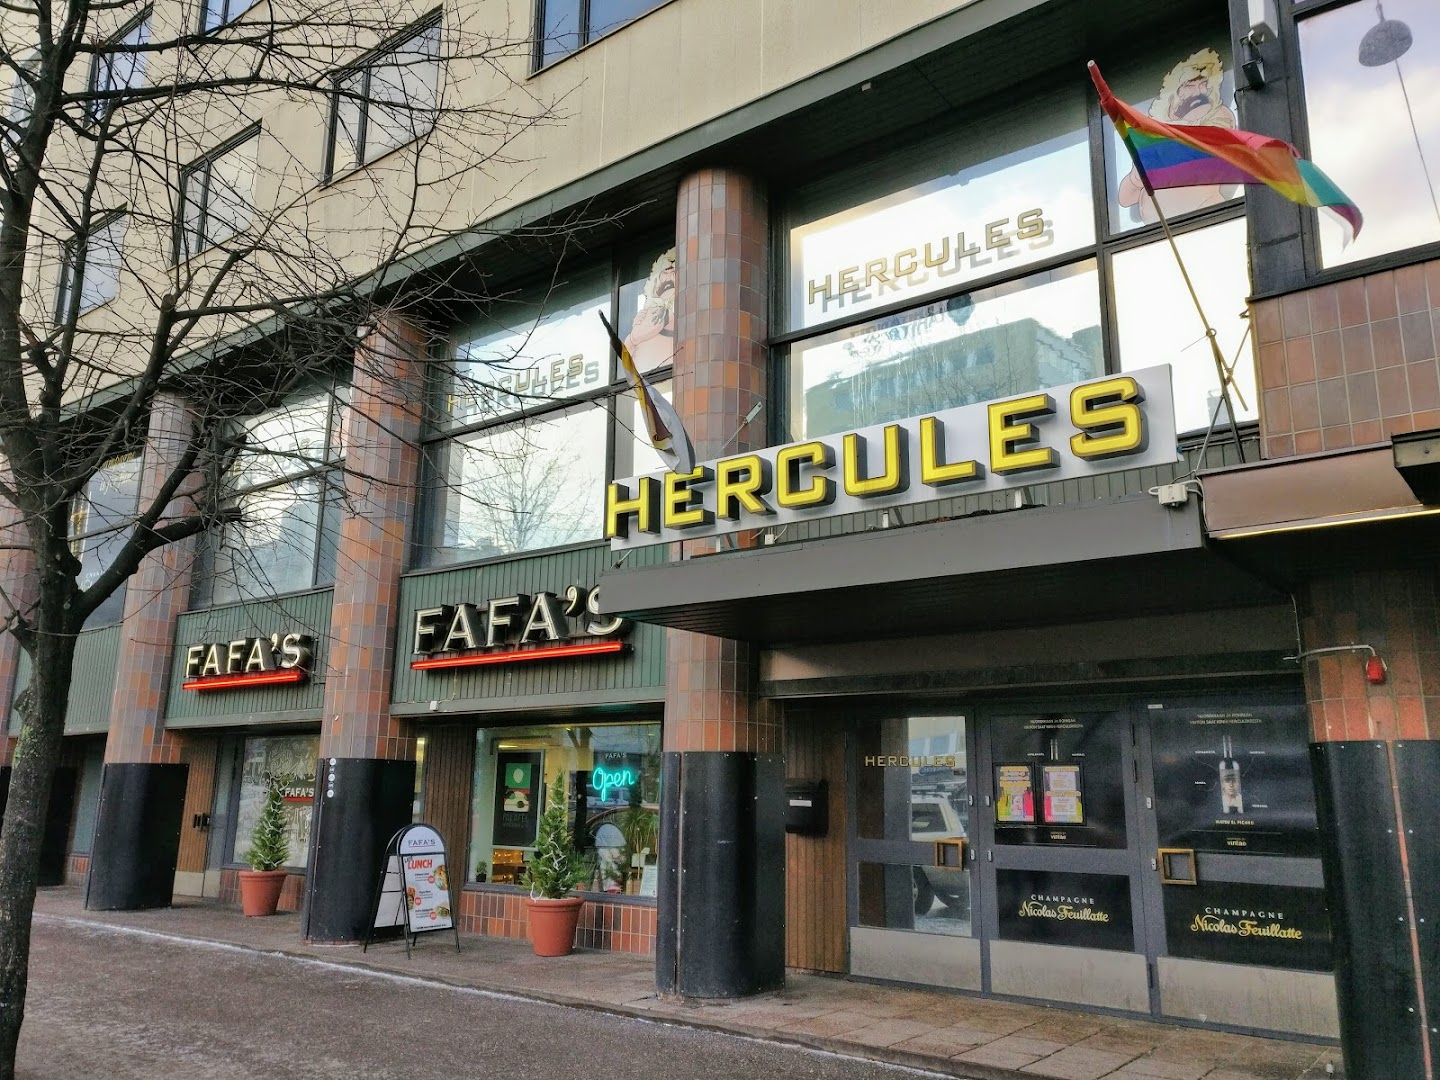 Hercules Gay Nightclub